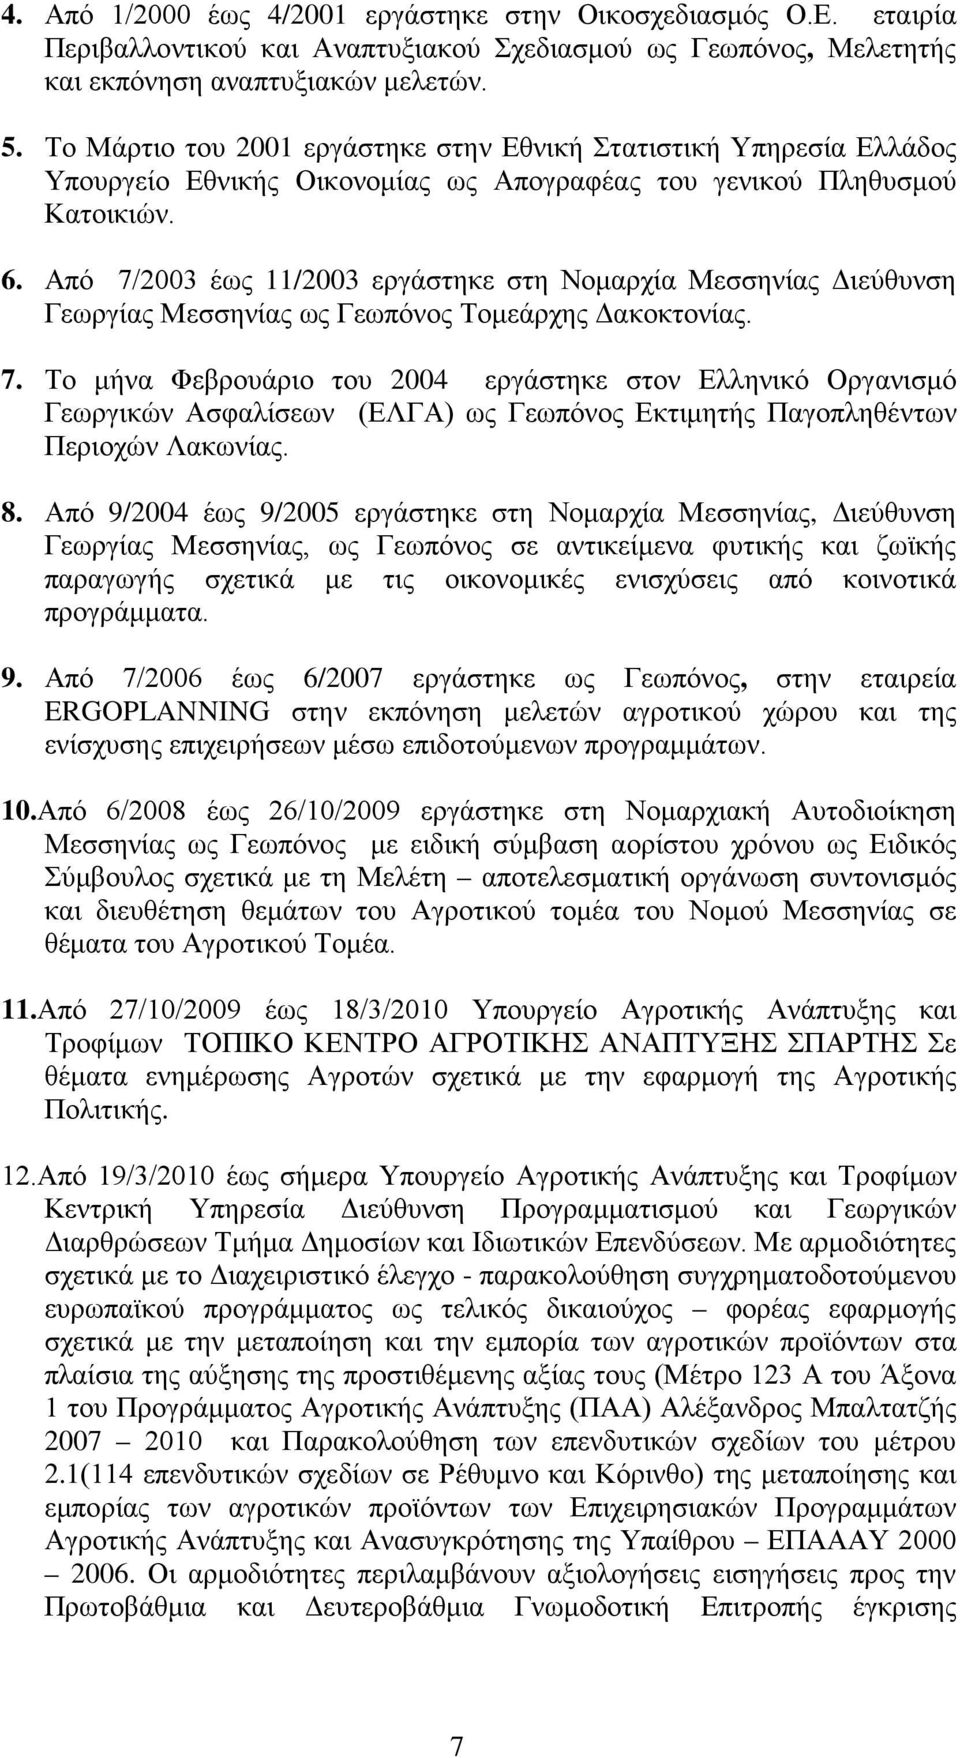 Από 7/2003 έως 11/2003 εργάστηκε στη Νομαρχία Μεσσηνίας Διεύθυνση Γεωργίας Μεσσηνίας ως Γεωπόνος Τομεάρχης Δακοκτονίας. 7. Το μήνα Φεβρουάριο του 2004 εργάστηκε στον Ελληνικό Οργανισμό Γεωργικών Ασφαλίσεων (ΕΛΓΑ) ως Γεωπόνος Εκτιμητής Παγοπληθέντων Περιοχών Λακωνίας.